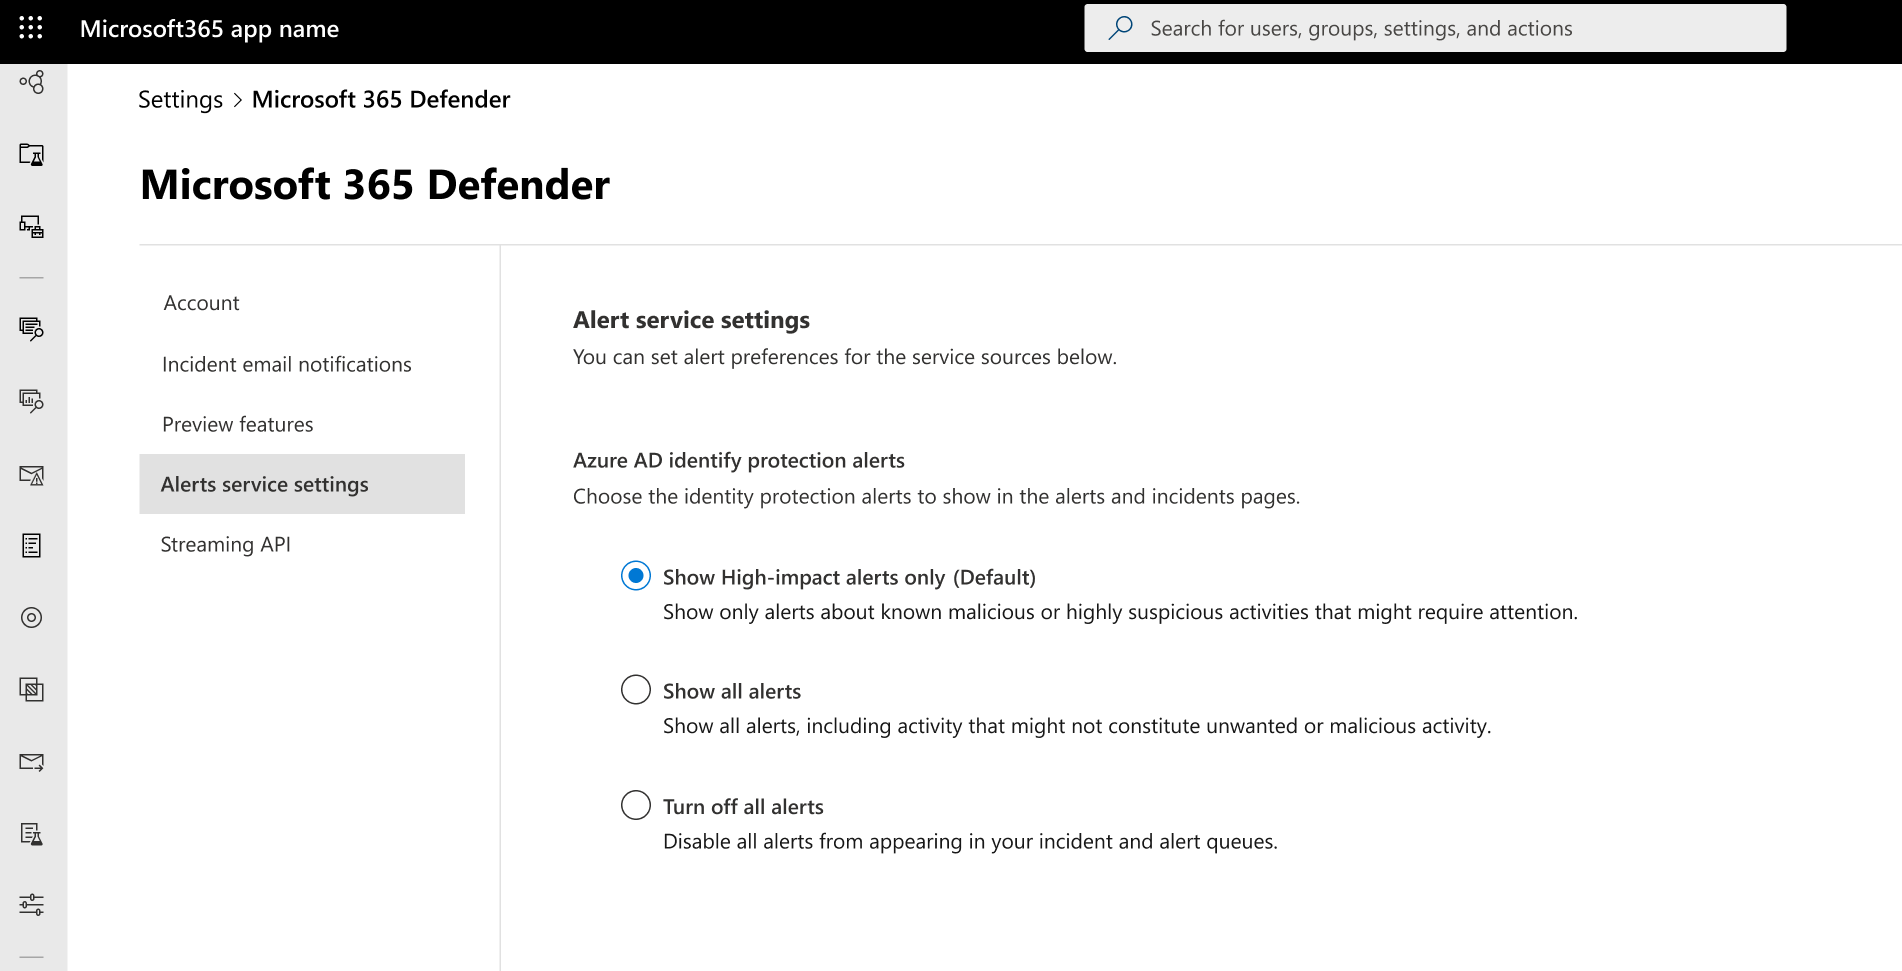 Captura de tela da configuração de alertas de proteção de identidade Azure AD no portal do Microsoft 365 Defender.